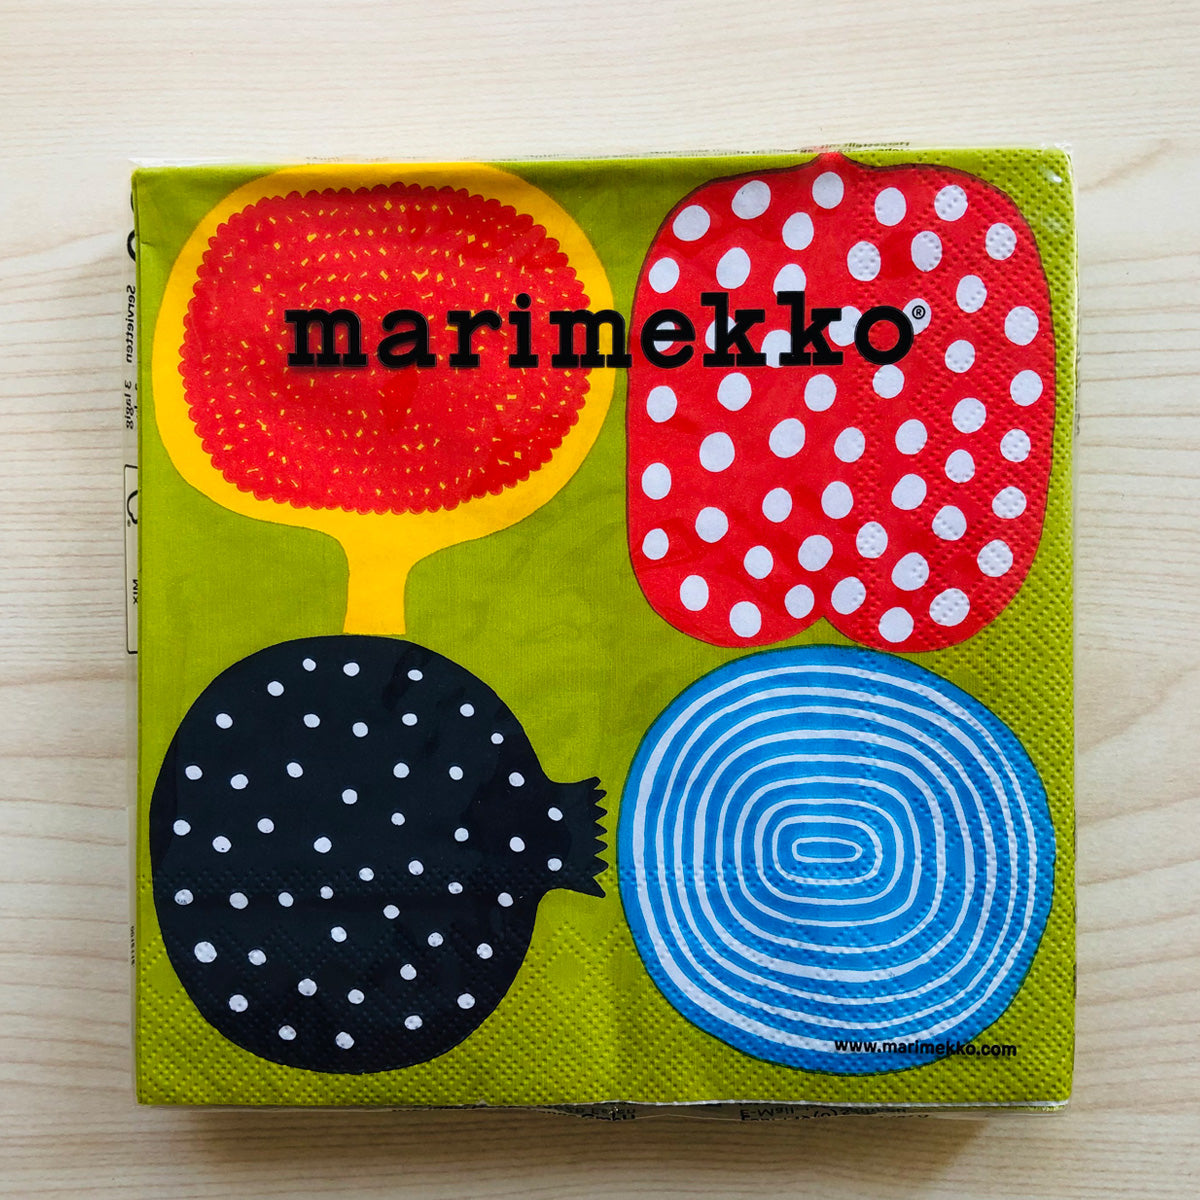 マリメッコ marimekko ペーパーナプキン 紙ナプキン ランチサイズ 20枚 553700 KOMPOTTI コンポッティ マルチカラー